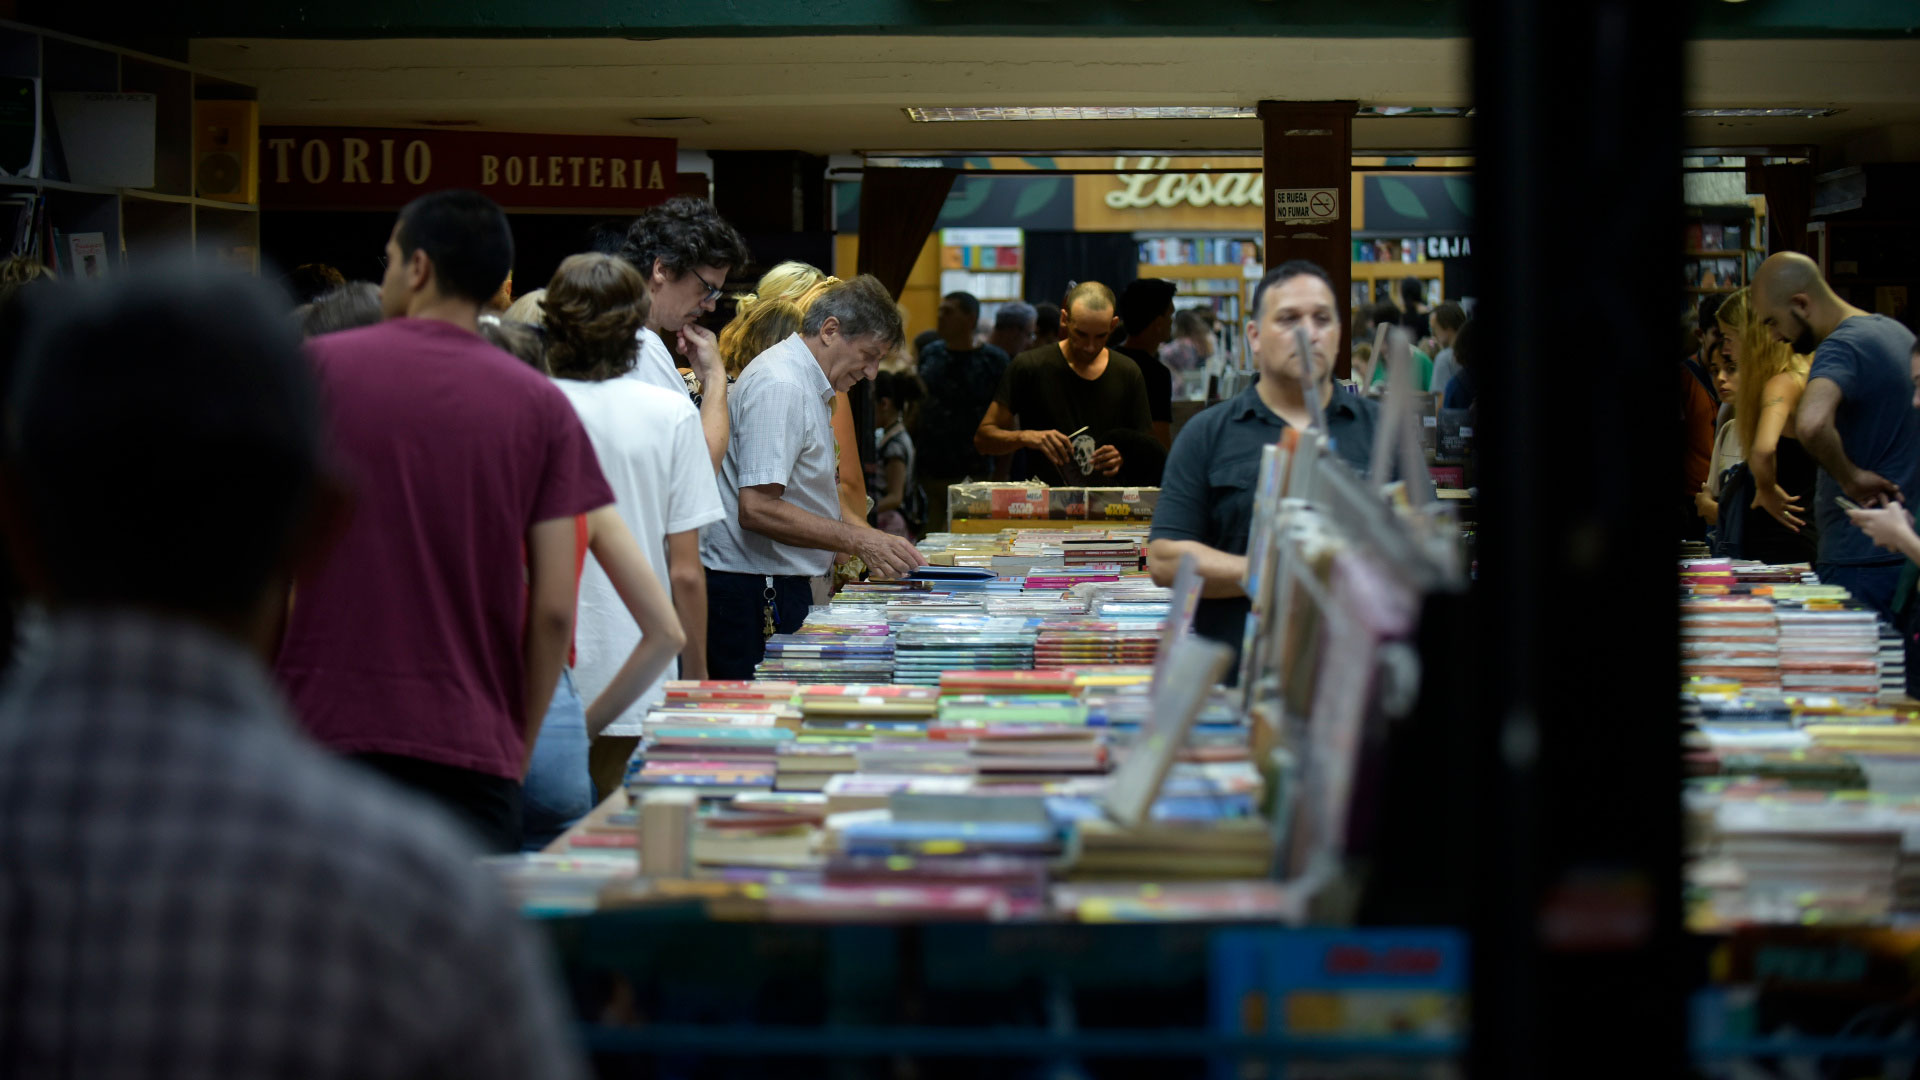 Los libreros aprovecharon al máximo su oficio de recomendar durante "La noche de las librerías" (Gustavo Gavotti)